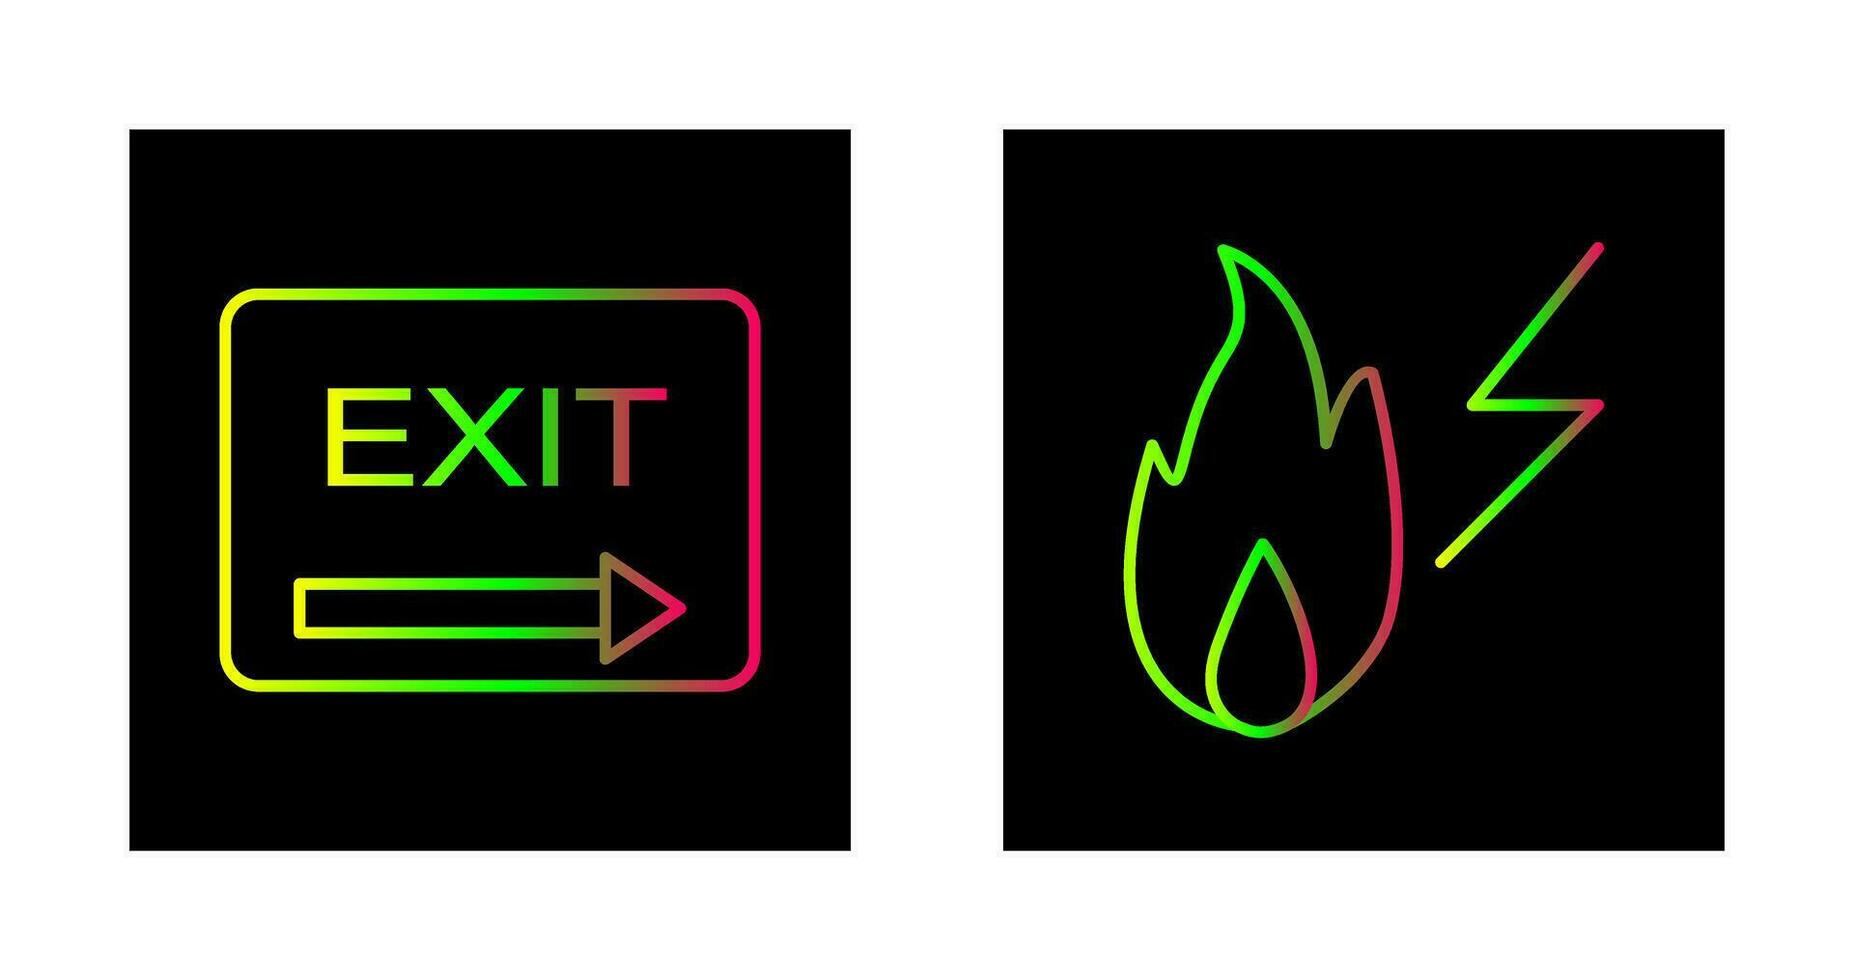 Ausfahrt und Elektrizität Feuer Symbol vektor